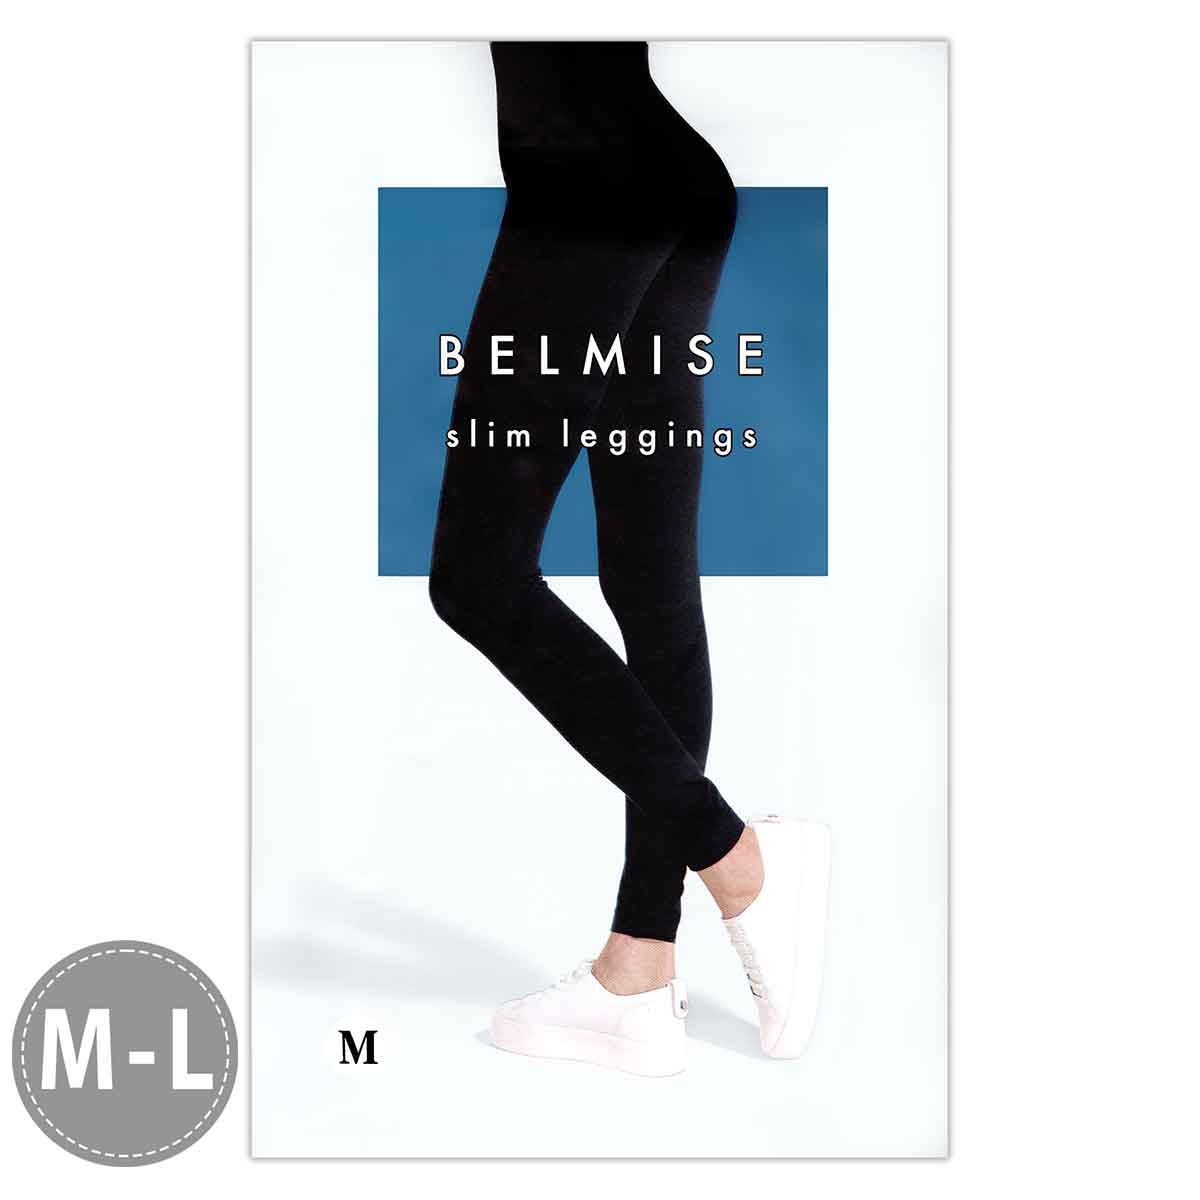 ベルミス スリムレギンス BELMISE Slim leggings M-Lサイズ M Lサイズ メール便送料無料NYH / ベルミスレギンスMS05-05 / BMLGSM-01P